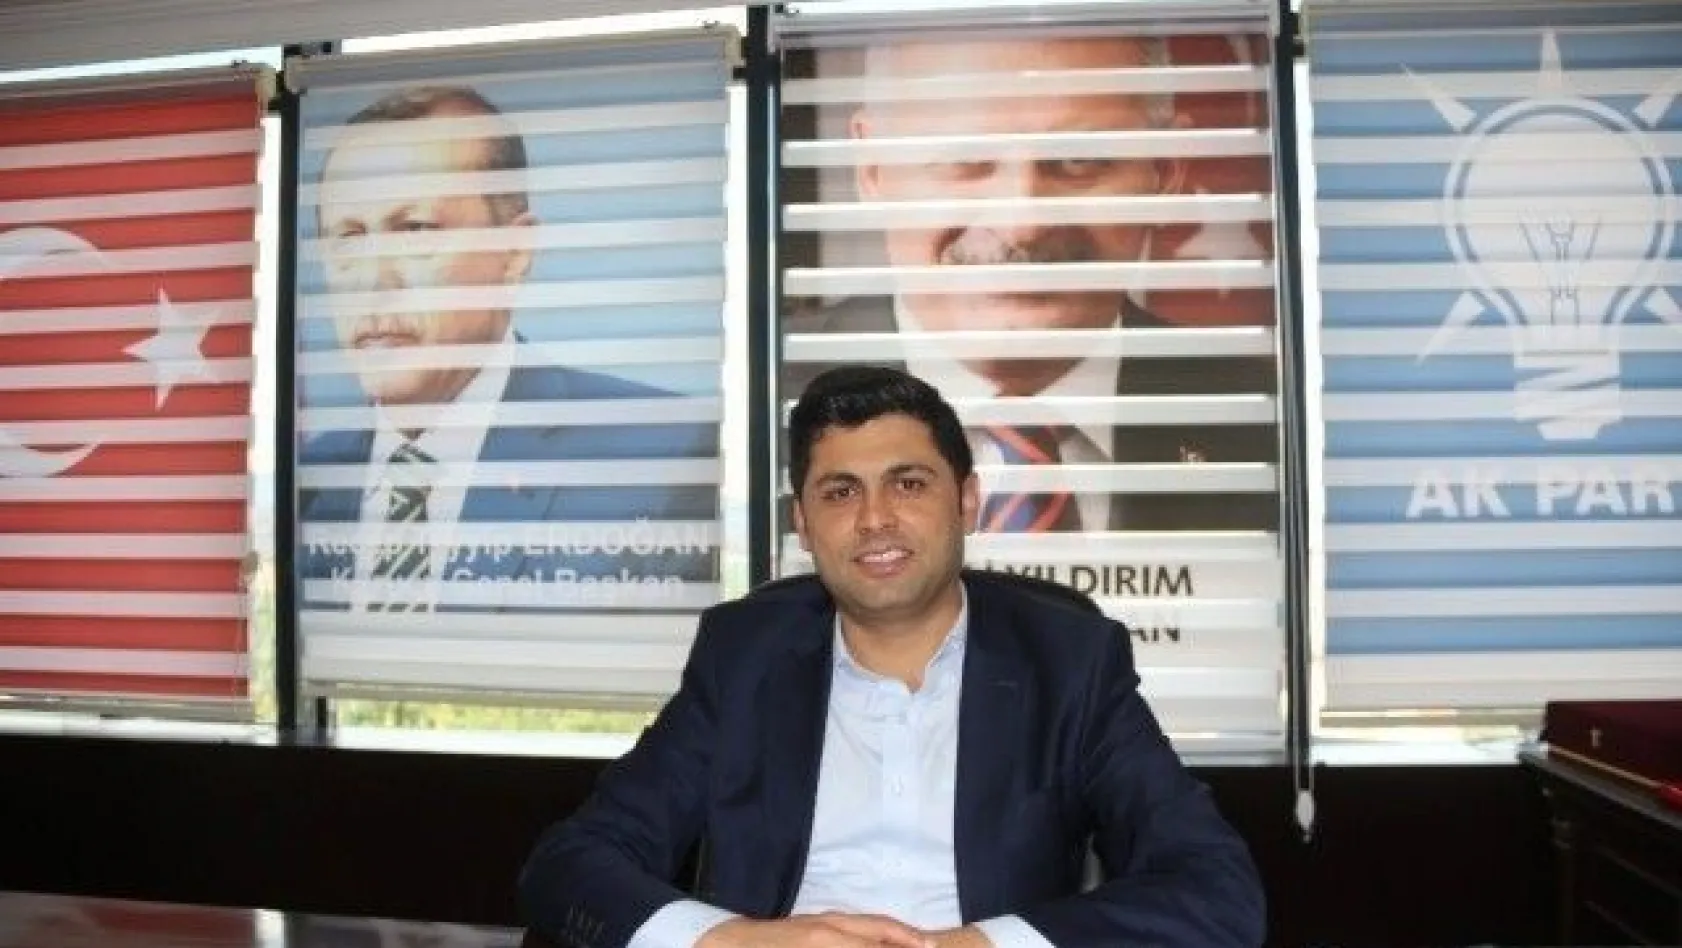 AK Parti Bingöl İl Başkanı istifa etti
